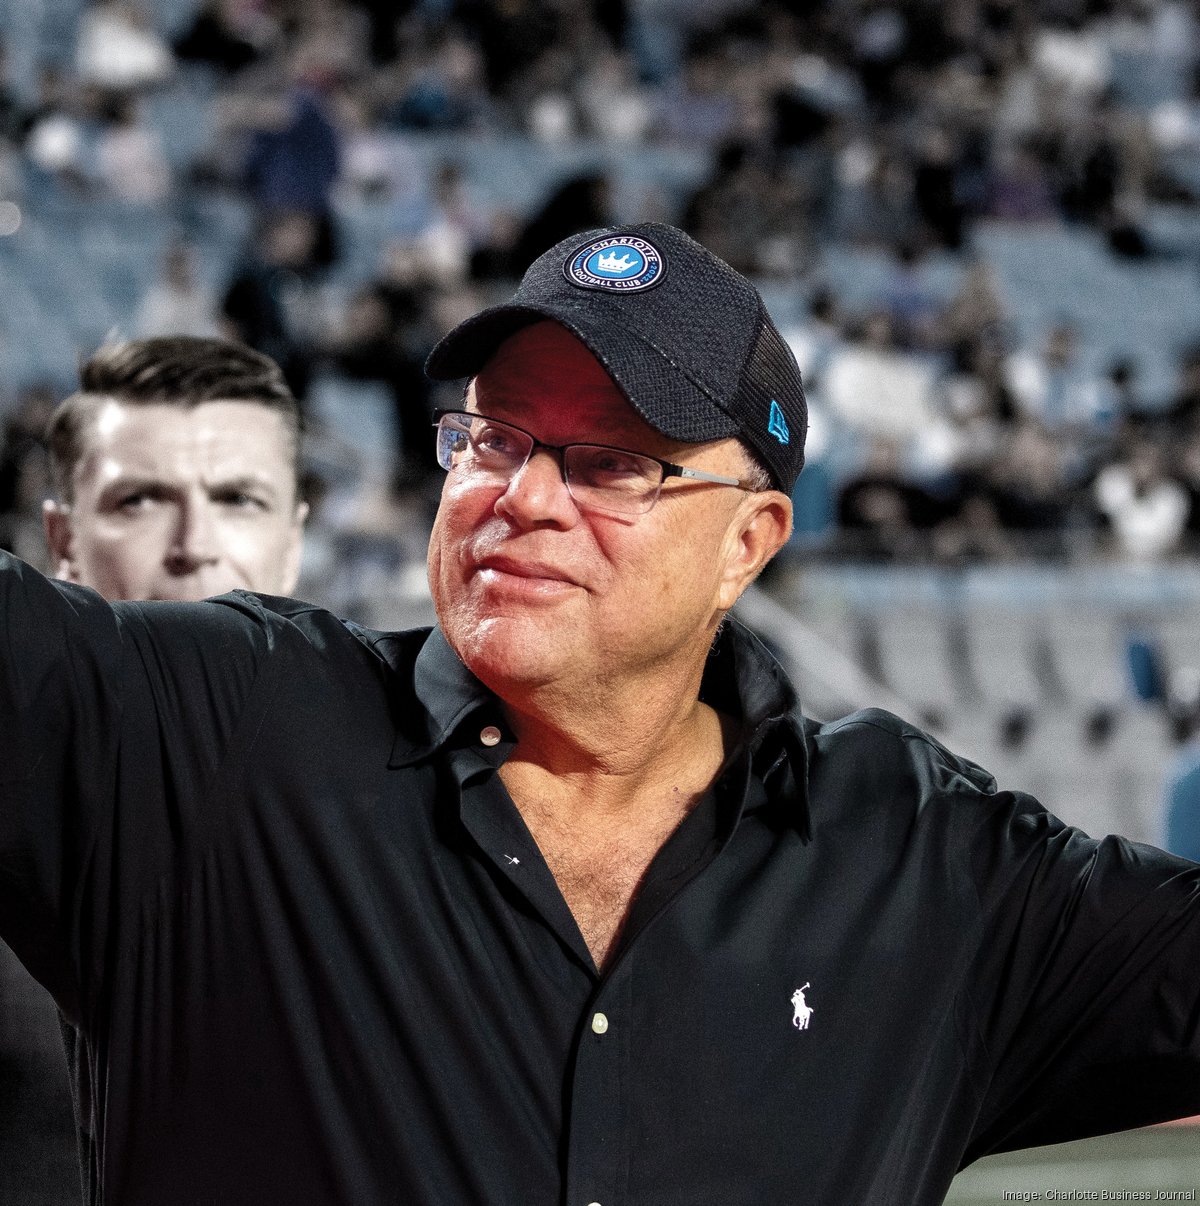 Carolina Panthers owner David Tepper still winning despite missteps -  Charlotte Business Journal